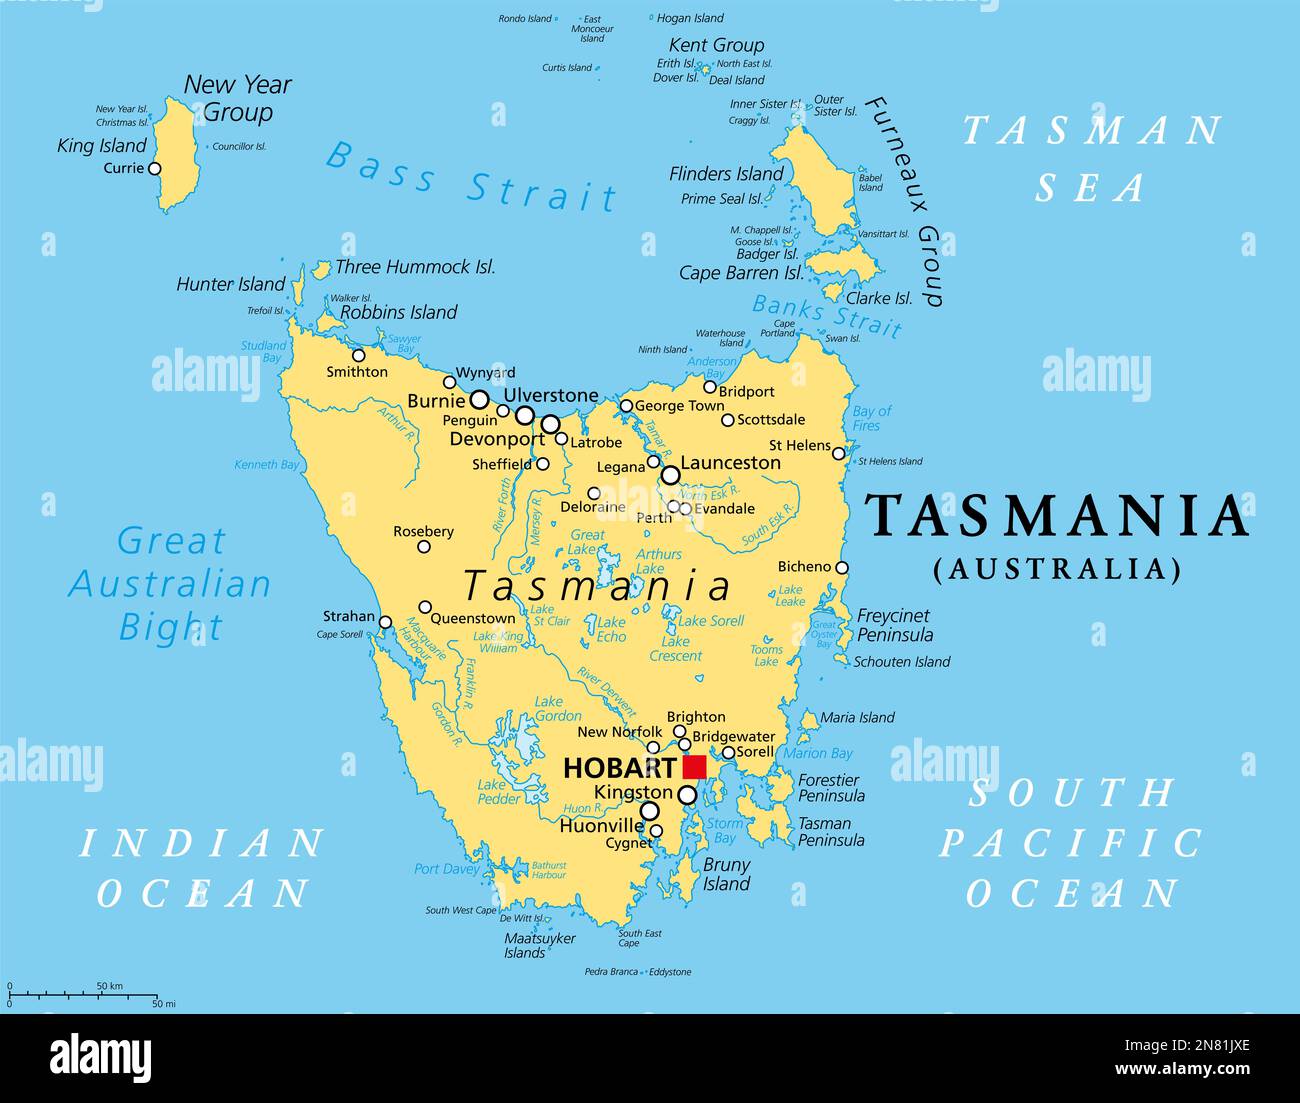 Tasmanie, État insulaire de l'Australie, carte politique. Situé au sud du continent australien, séparé de celui-ci par le détroit de Bass. Banque D'Images